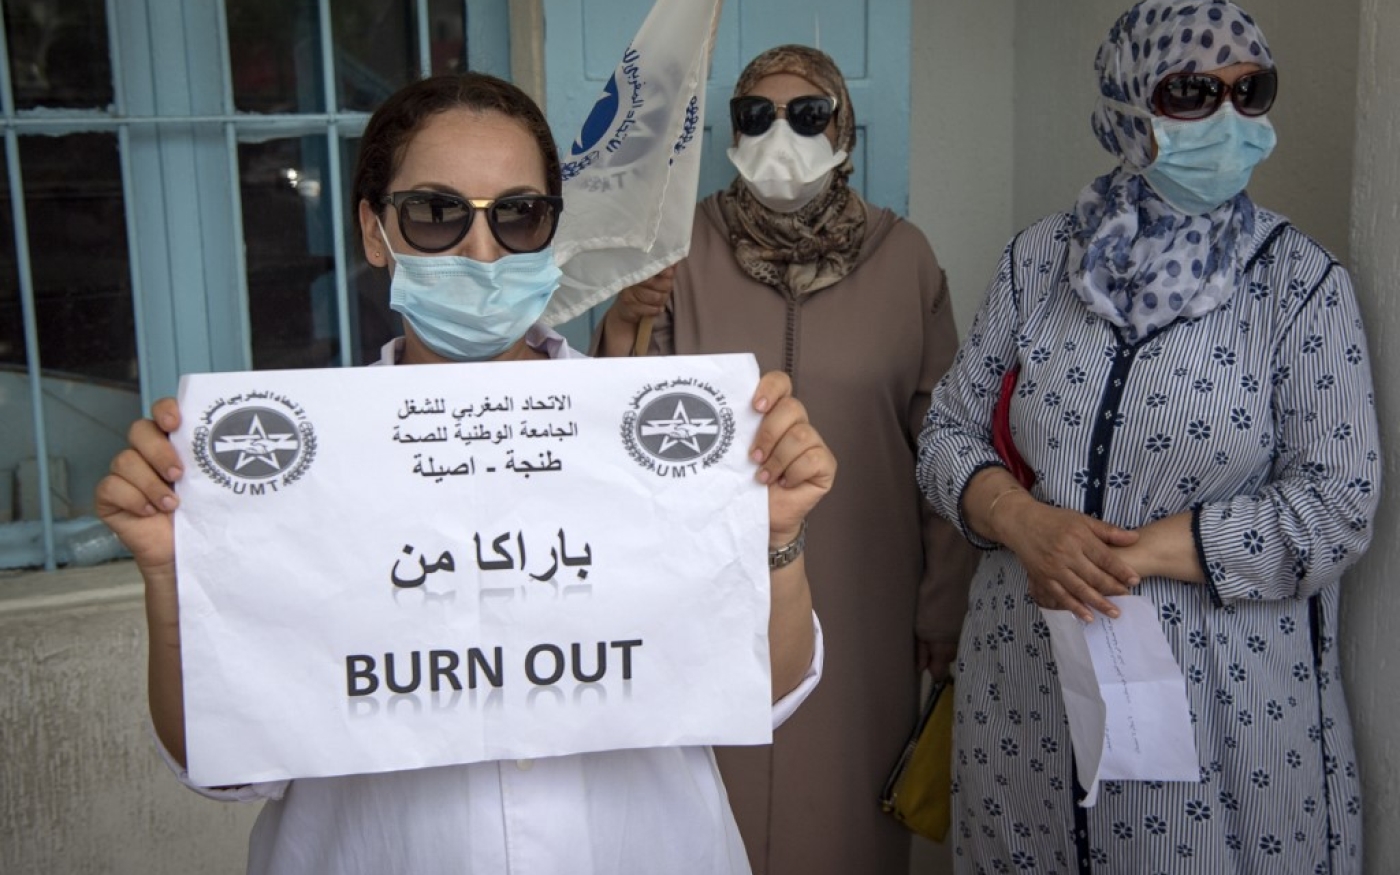 Des travailleurs du ministère marocain de la Santé manifestent pour protester contre l’annulation des vacances, à Tanger, le 11 août 2020 (AFP)